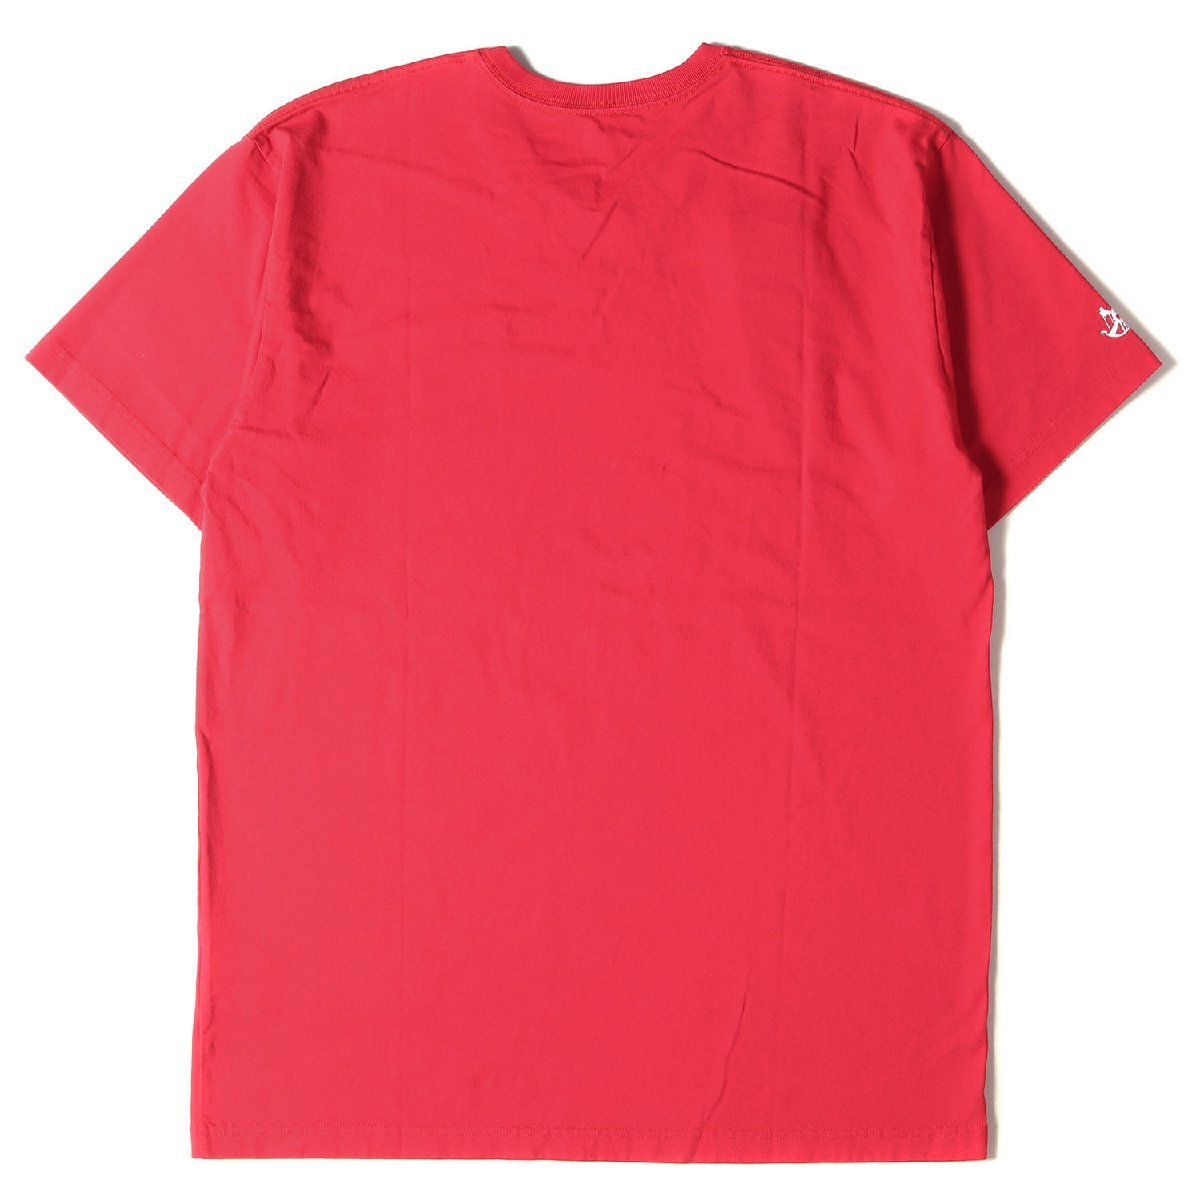 美品 NEIGHBORHOOD ネイバーフッド Tシャツ サイズ:L ブランドロゴ クルーネック レッド 赤 トップス カットソー 半袖 シンプル_画像2